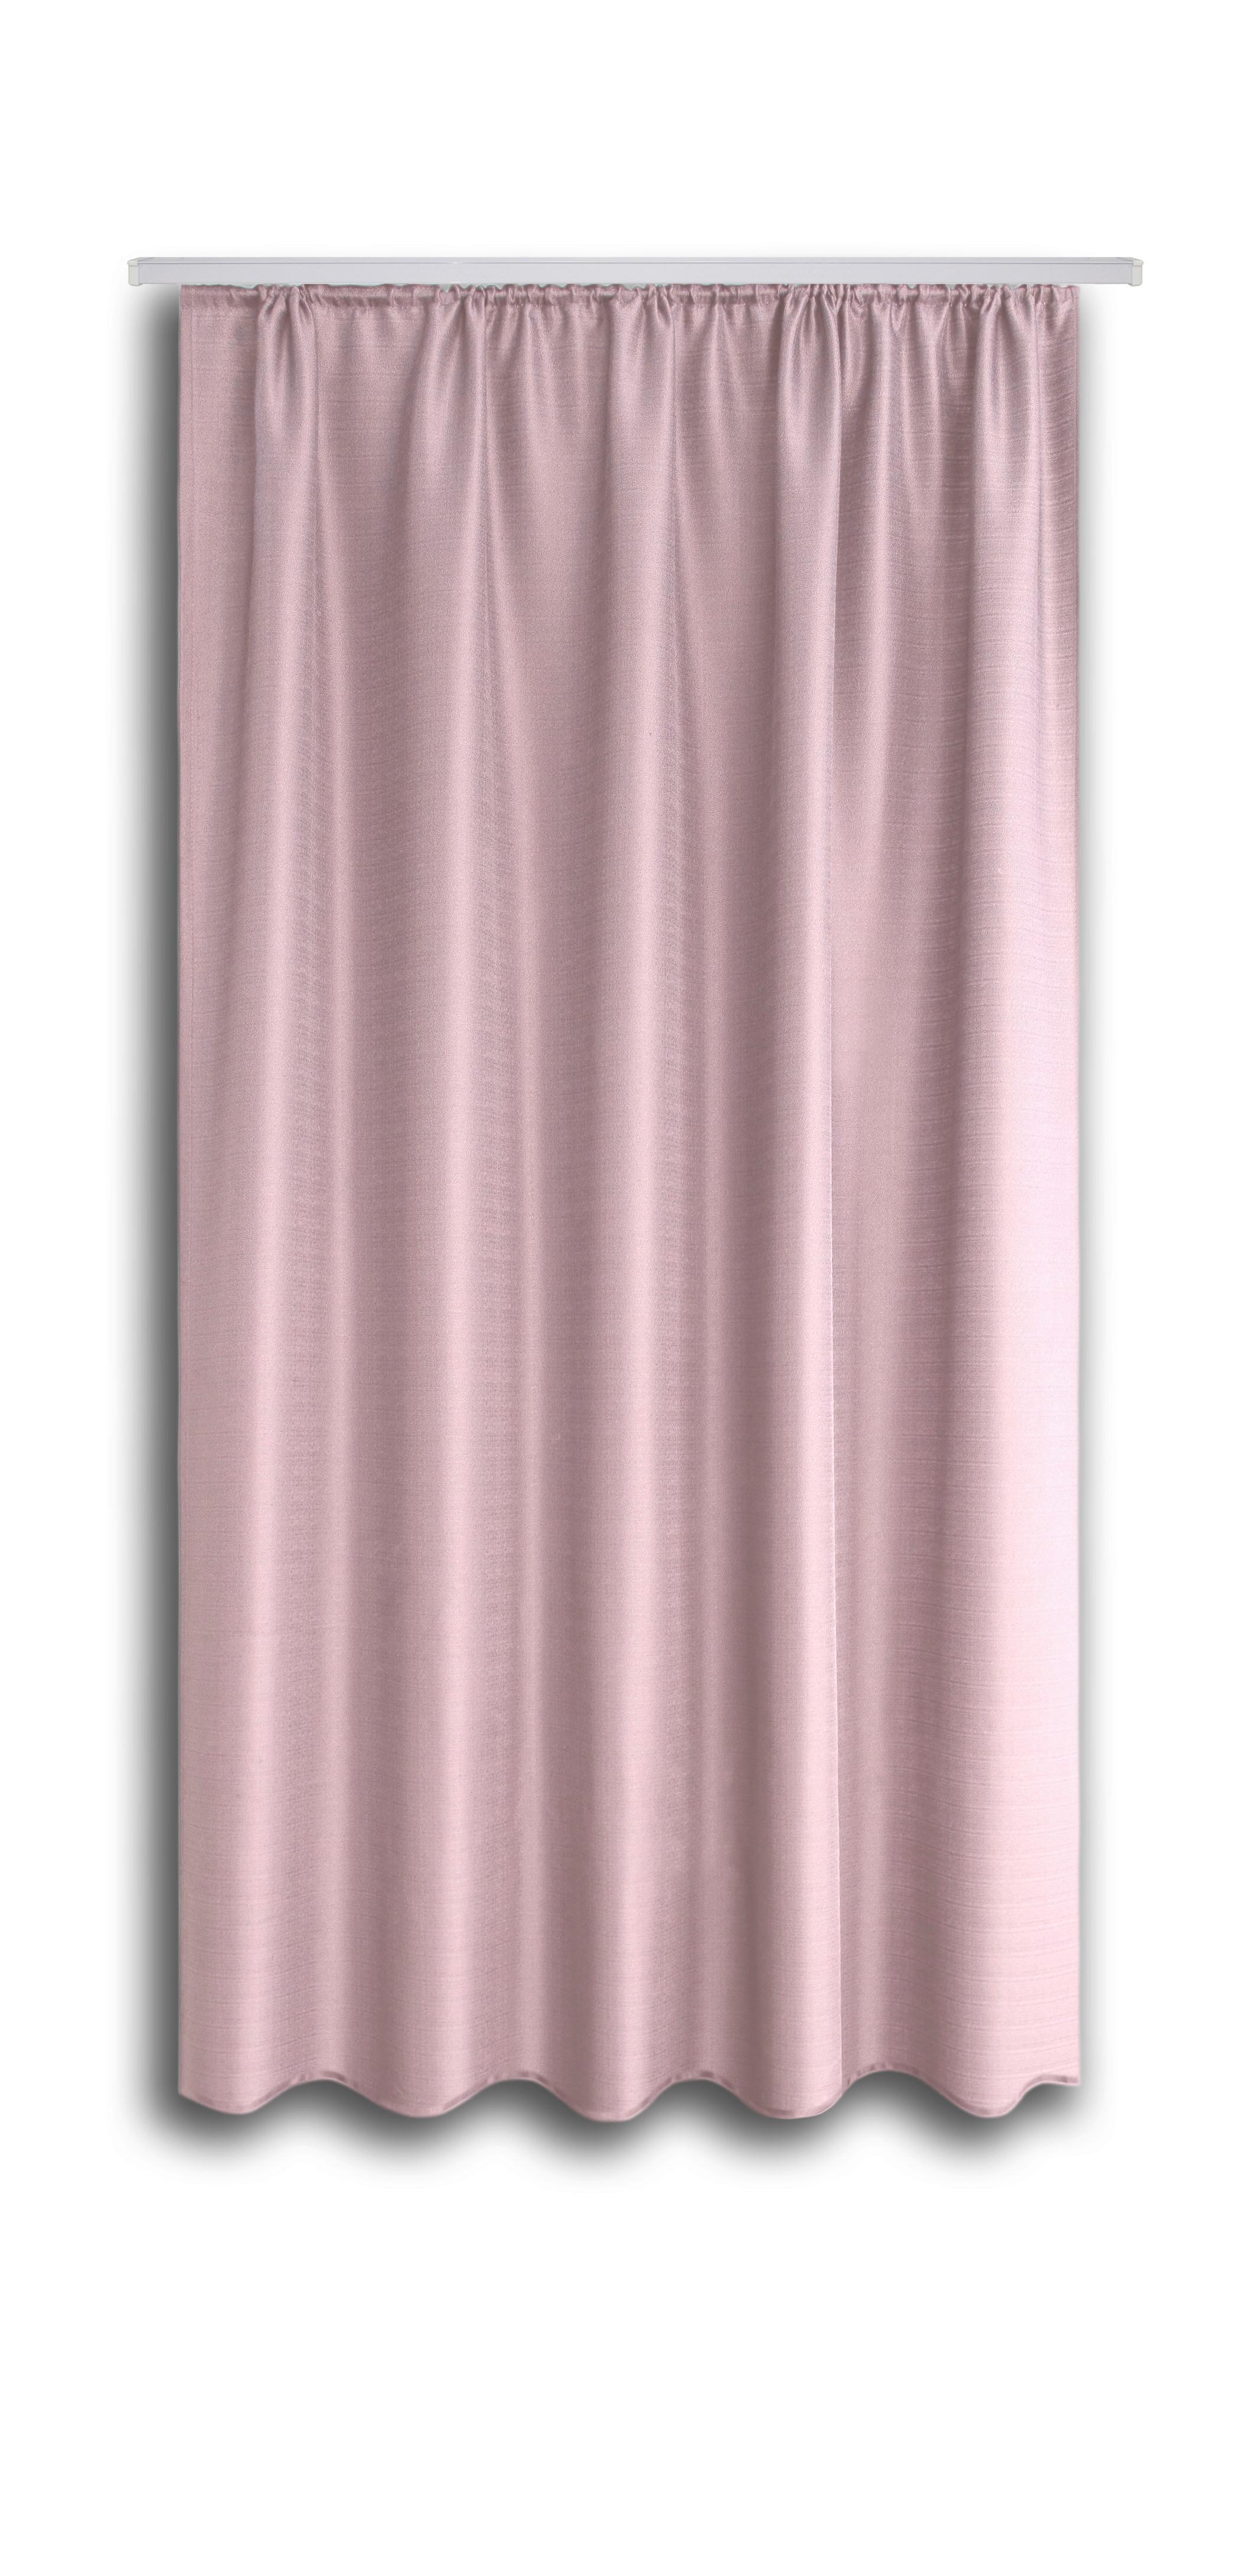 Készfüggöny Ben Ii - Rózsaszín, konvencionális, Textil (135/175cm) - Ondega